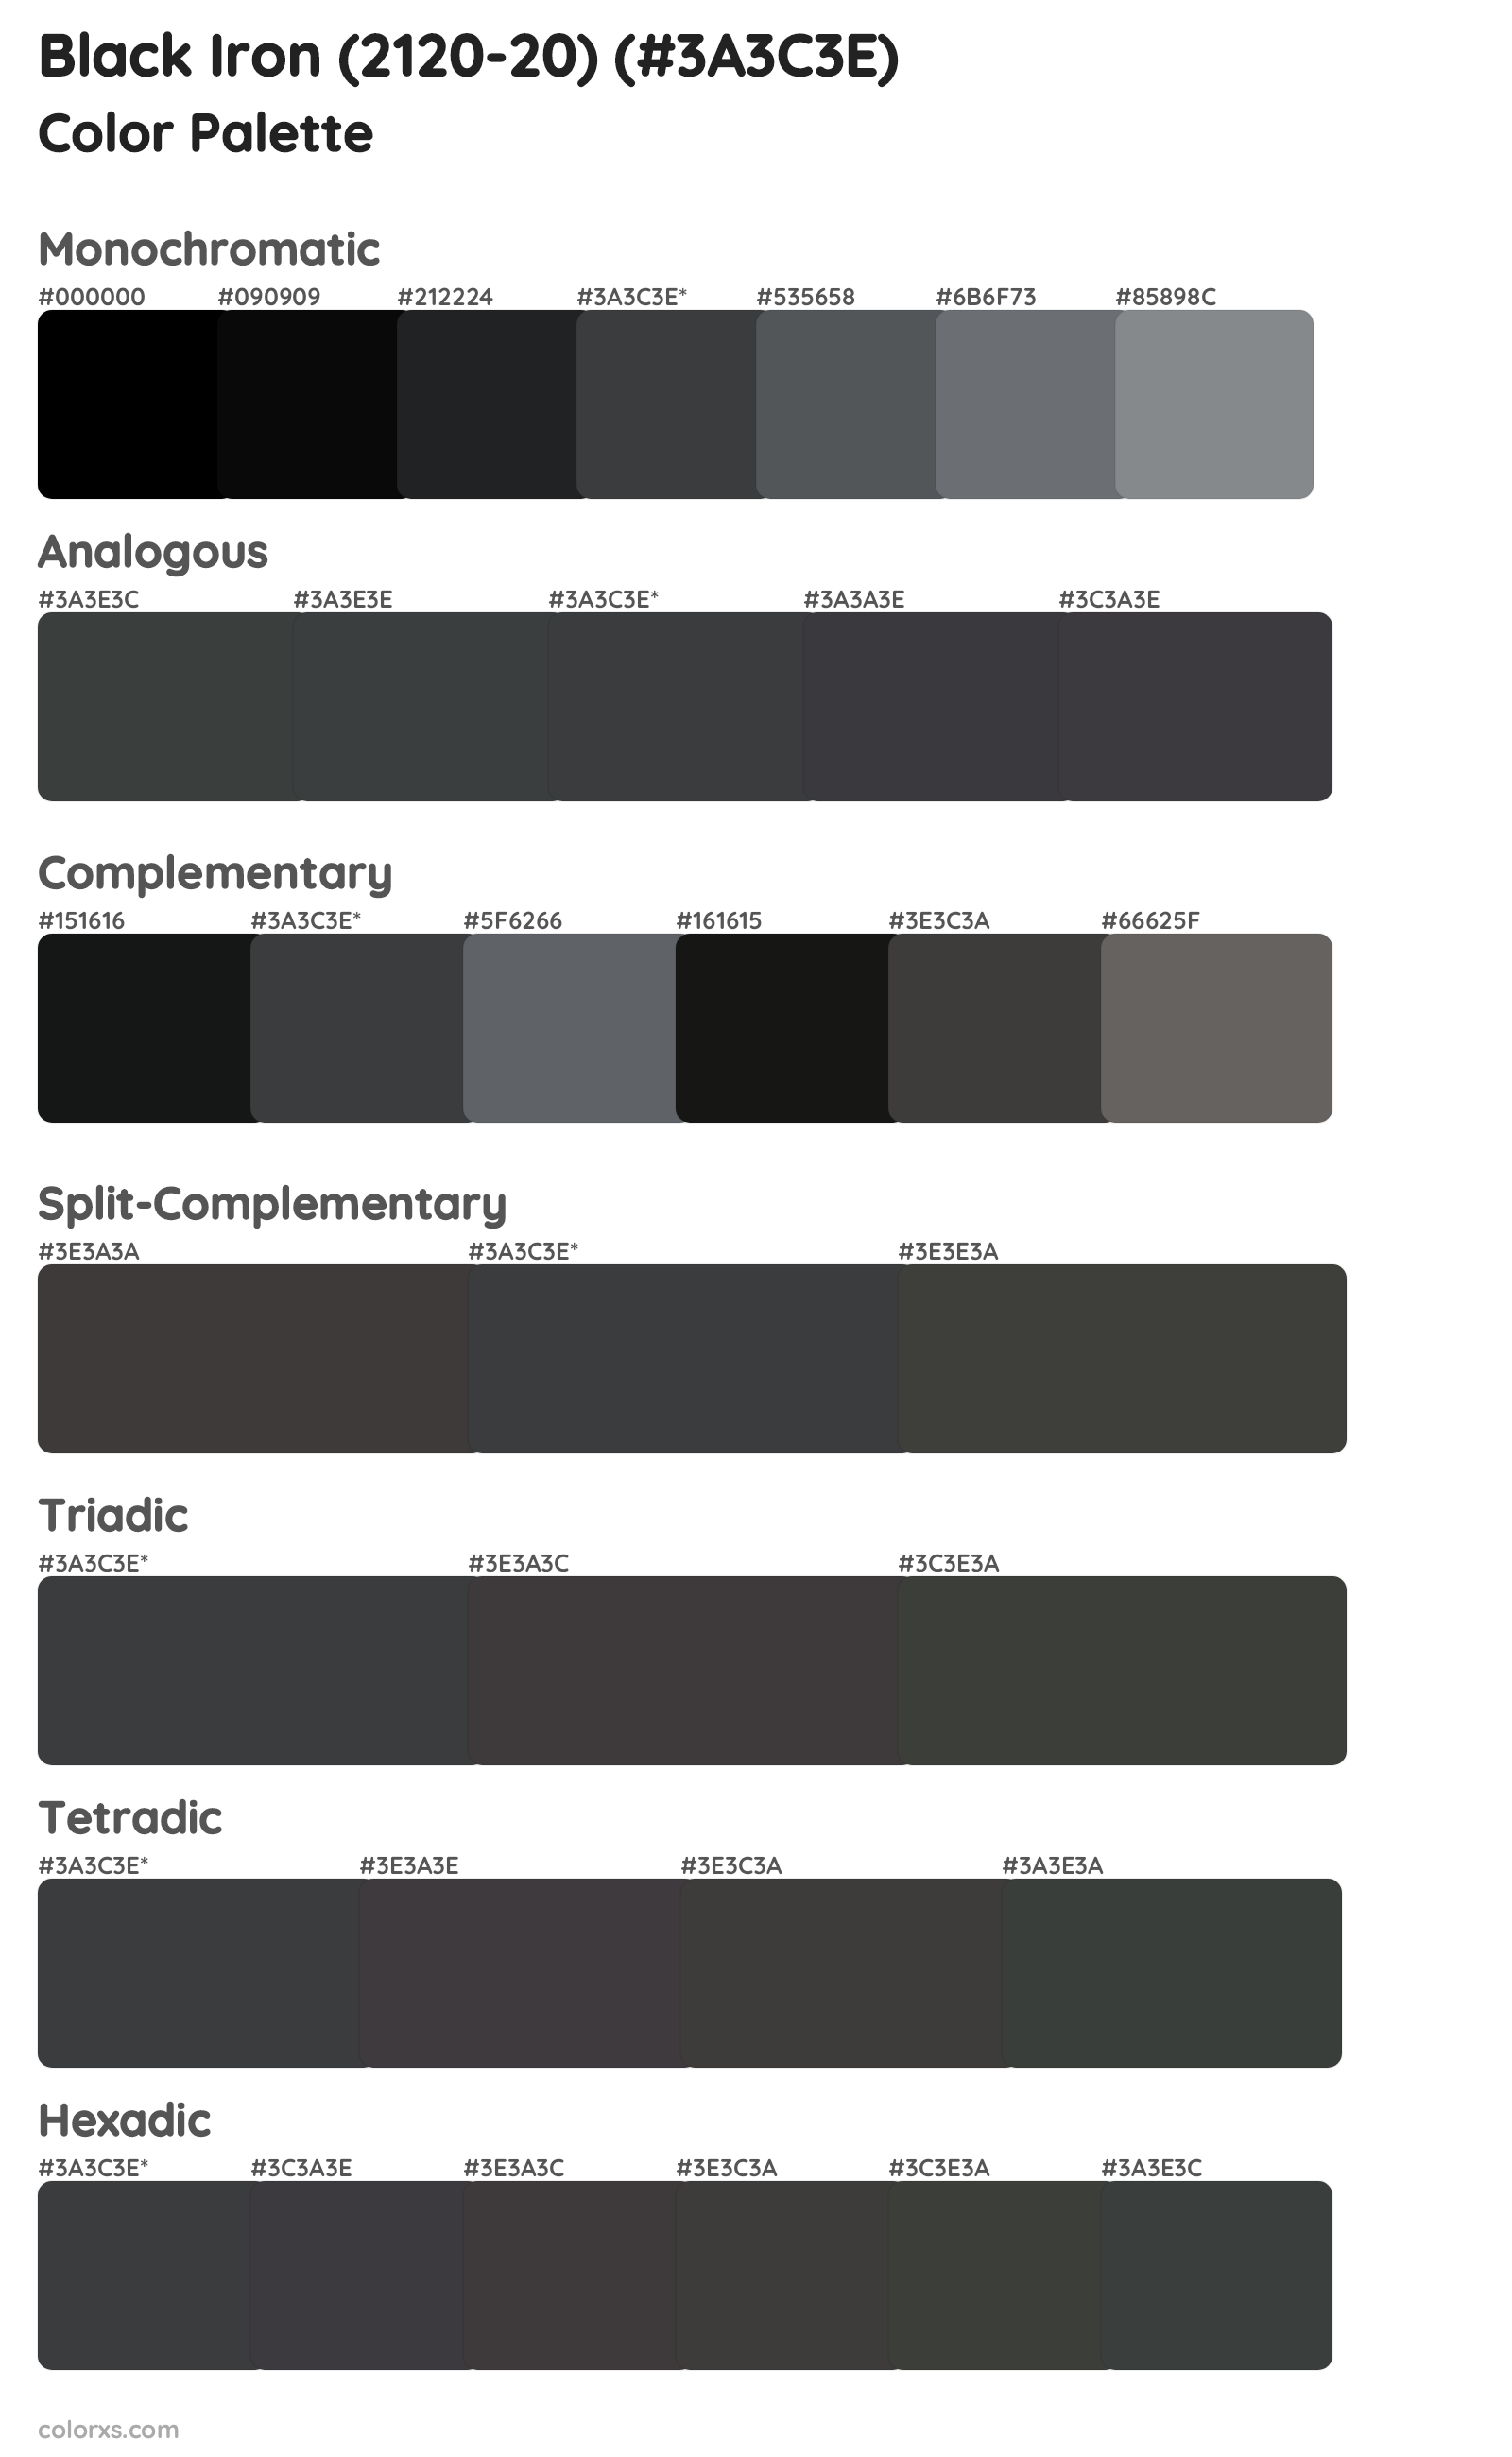 Black Iron (2120-20) Color Scheme Palettes